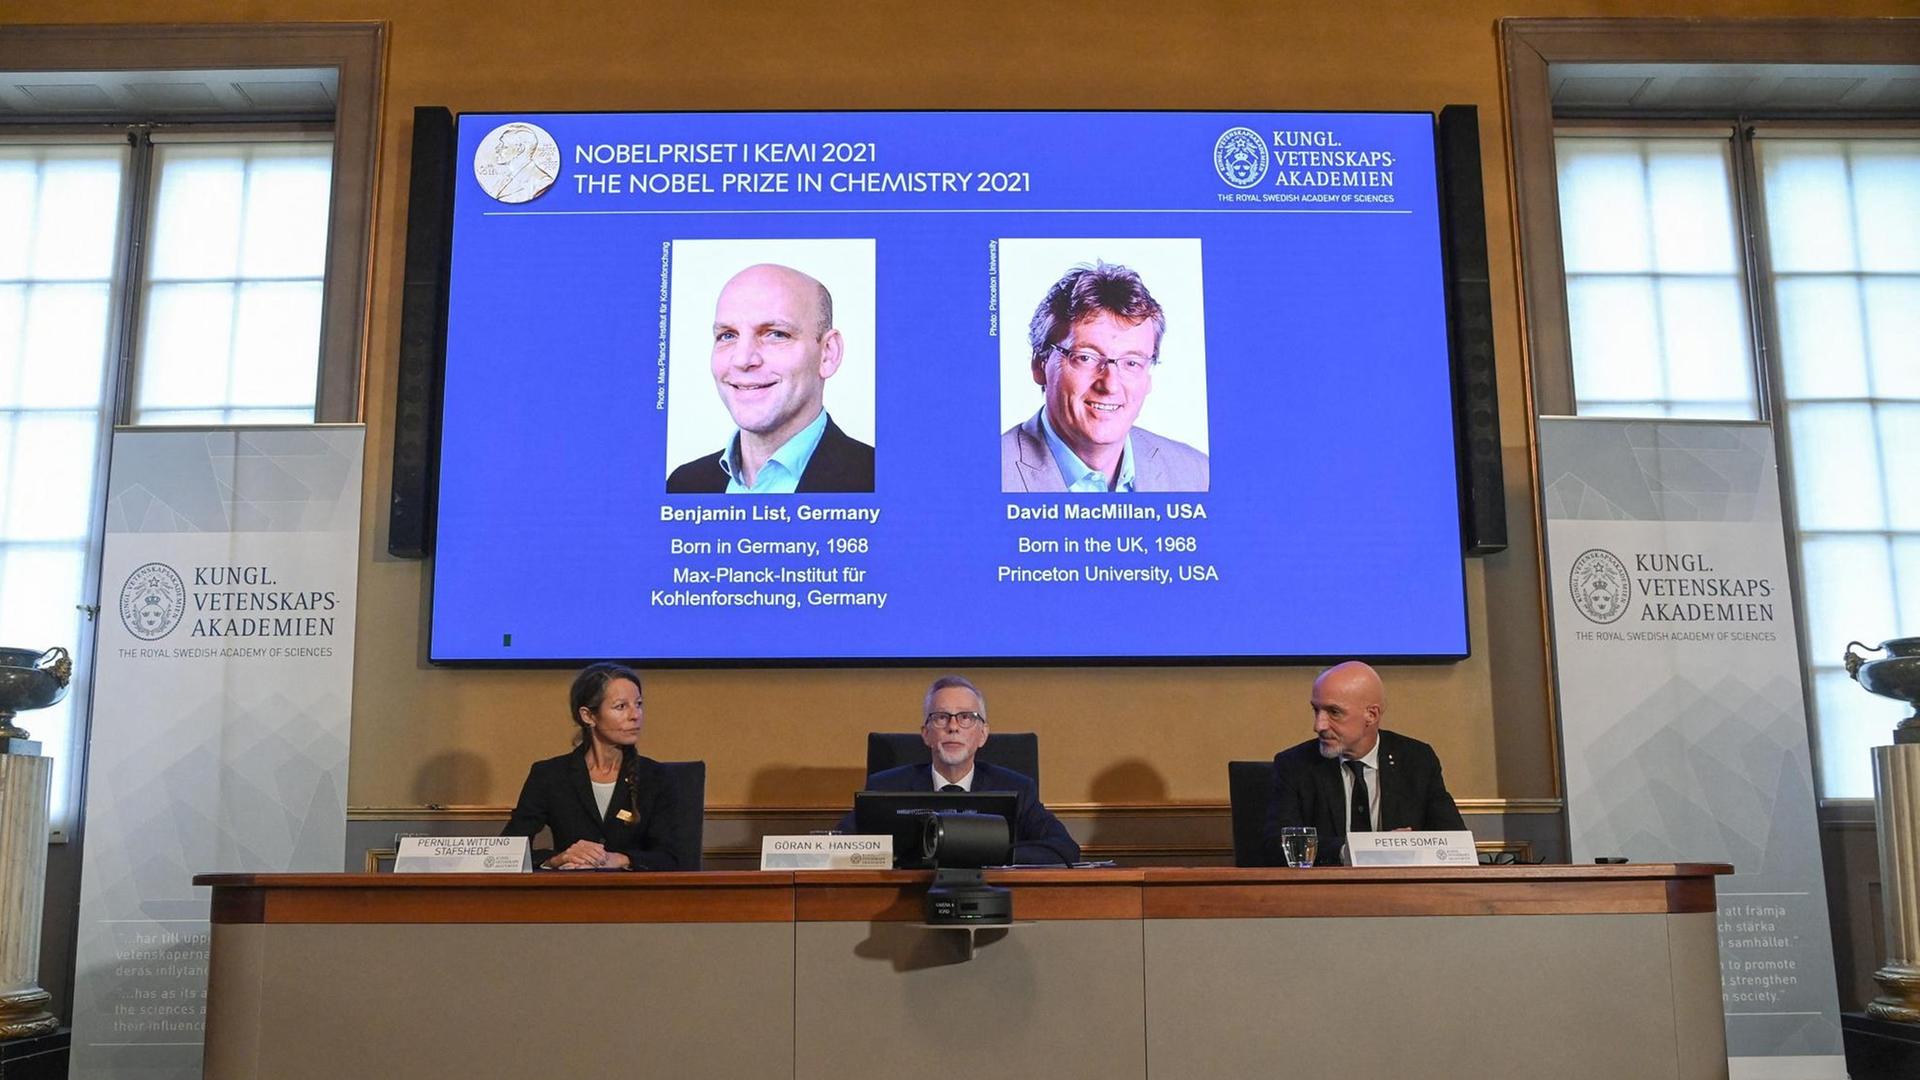 Der Bildschirm mit den Bildern der Chemie-Nobelpreisträger Benjamin List und David Macmillan.